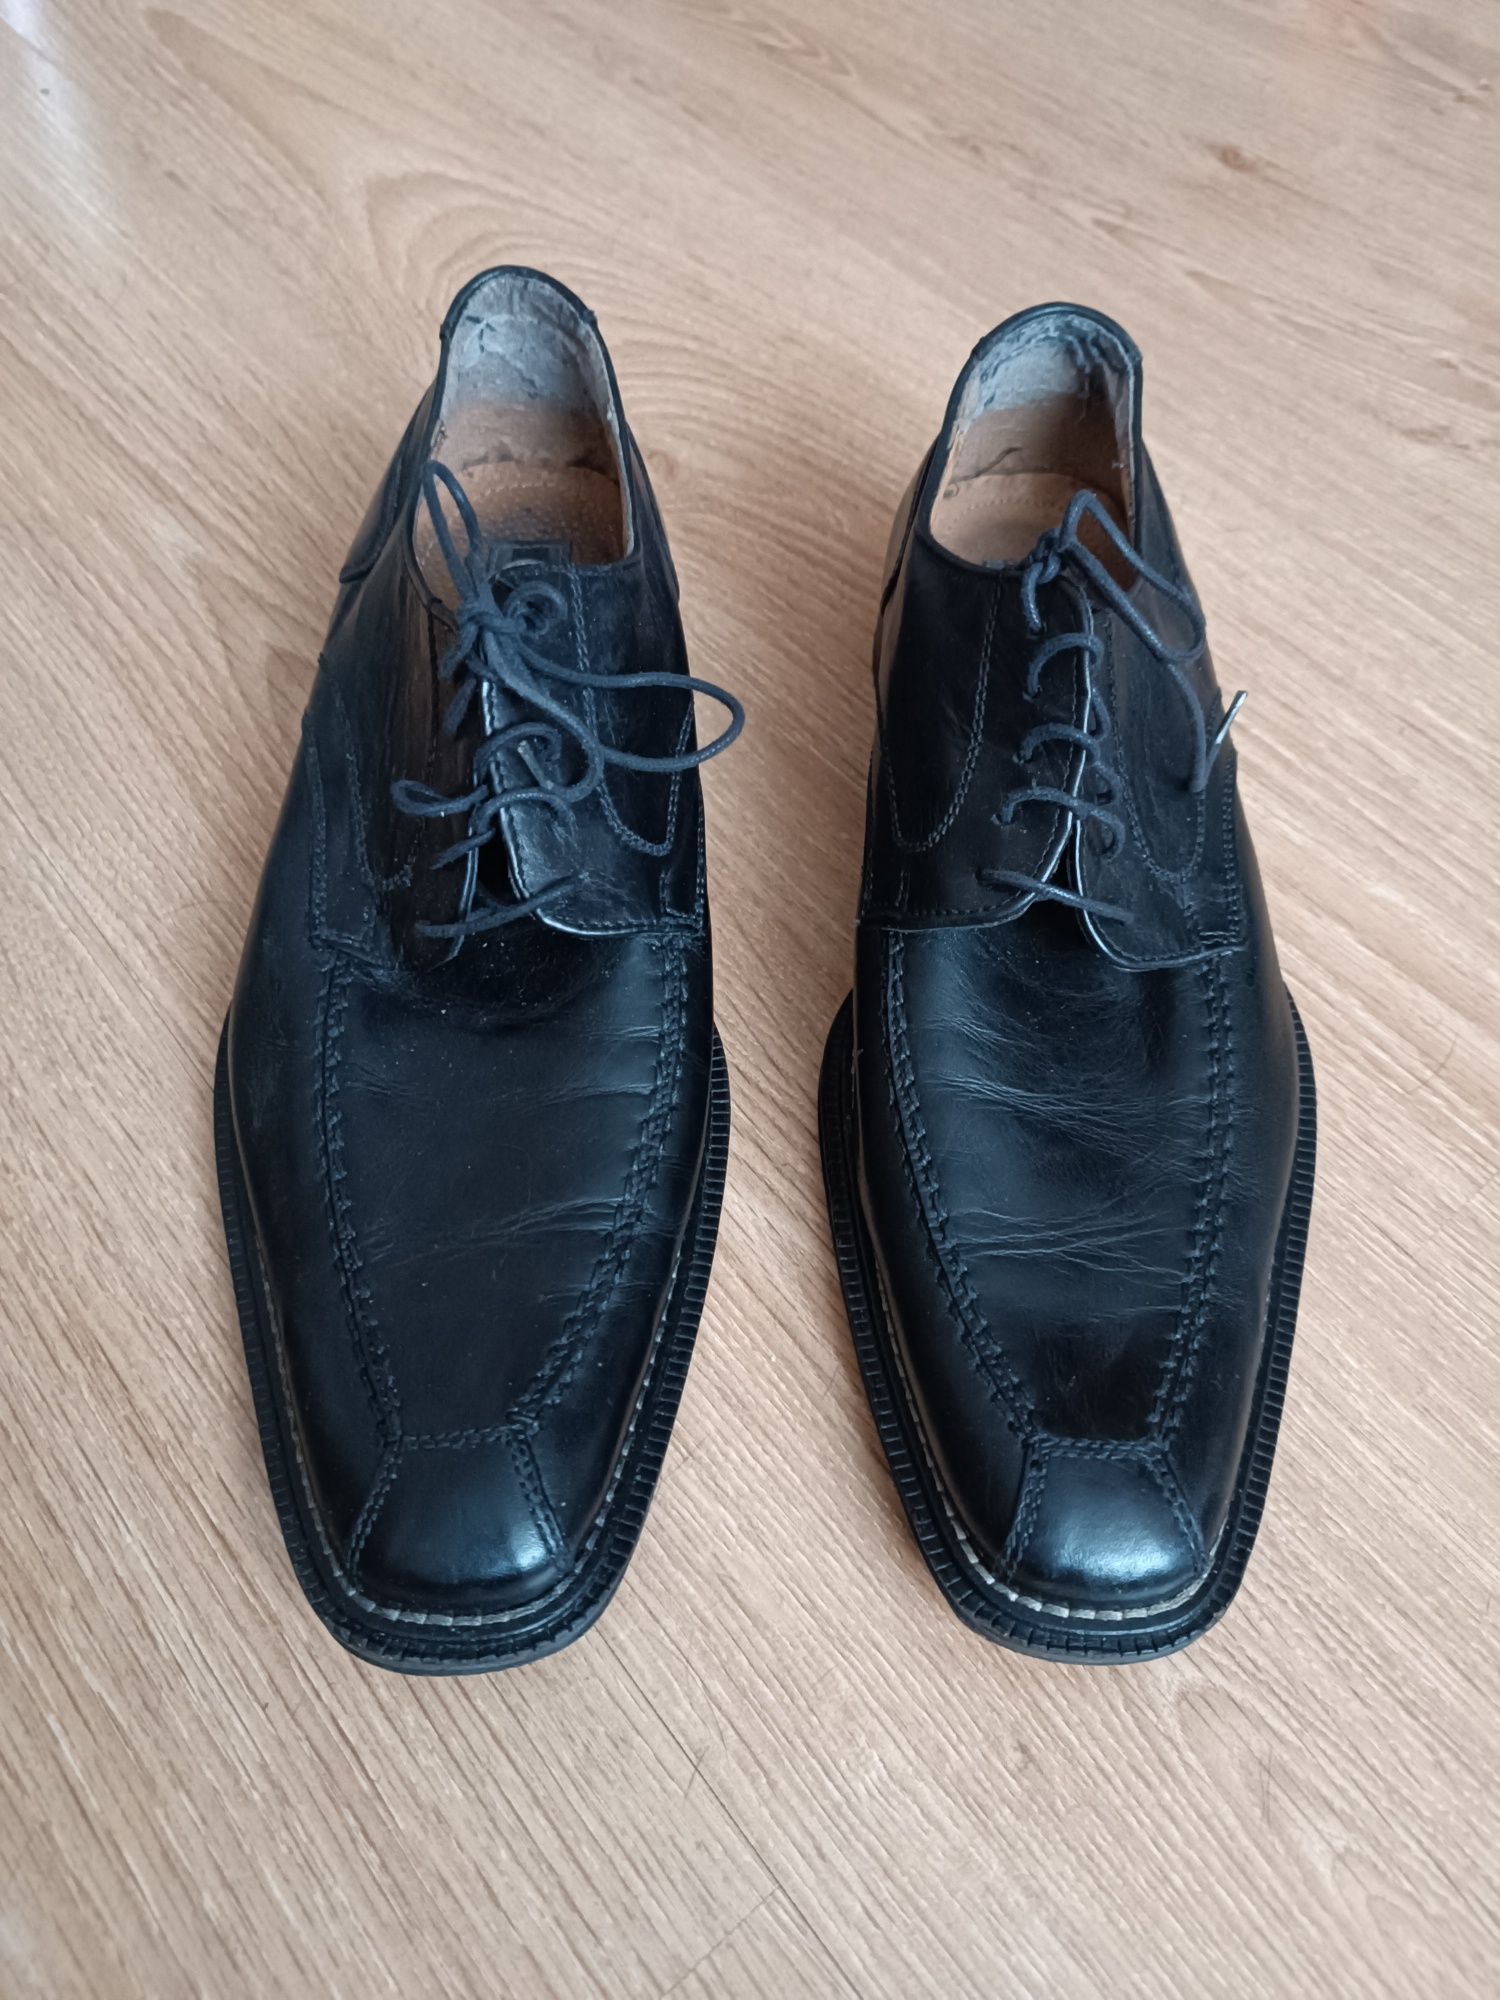 Skórzane buty męskie na skórze - firmy L.LAMBERTAZZI roz.44